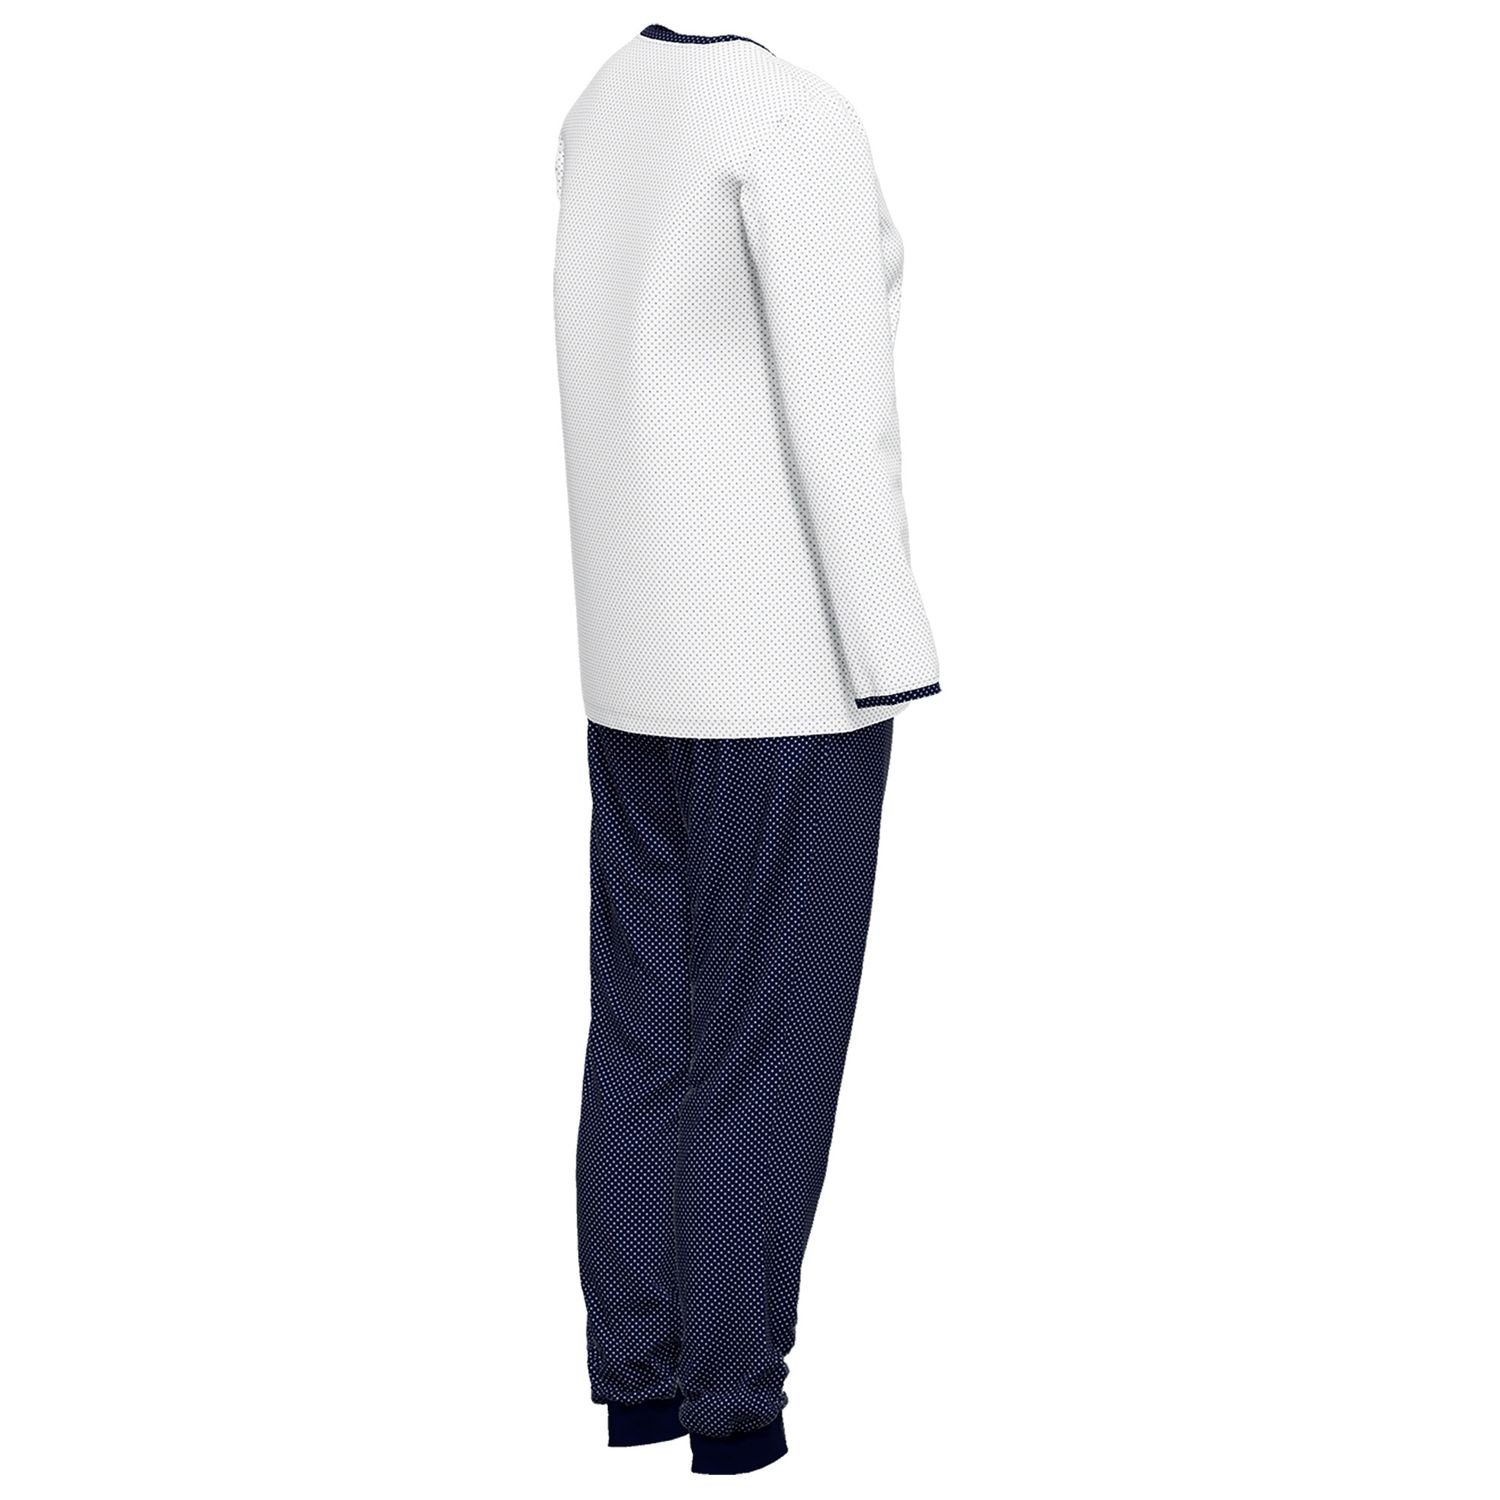 GÖTZBURG Schlafanzug mit Henley-Auschnitt, Knöpfe, navy reine weiß / weich, bequem, gepunktet langarm, Baumolle